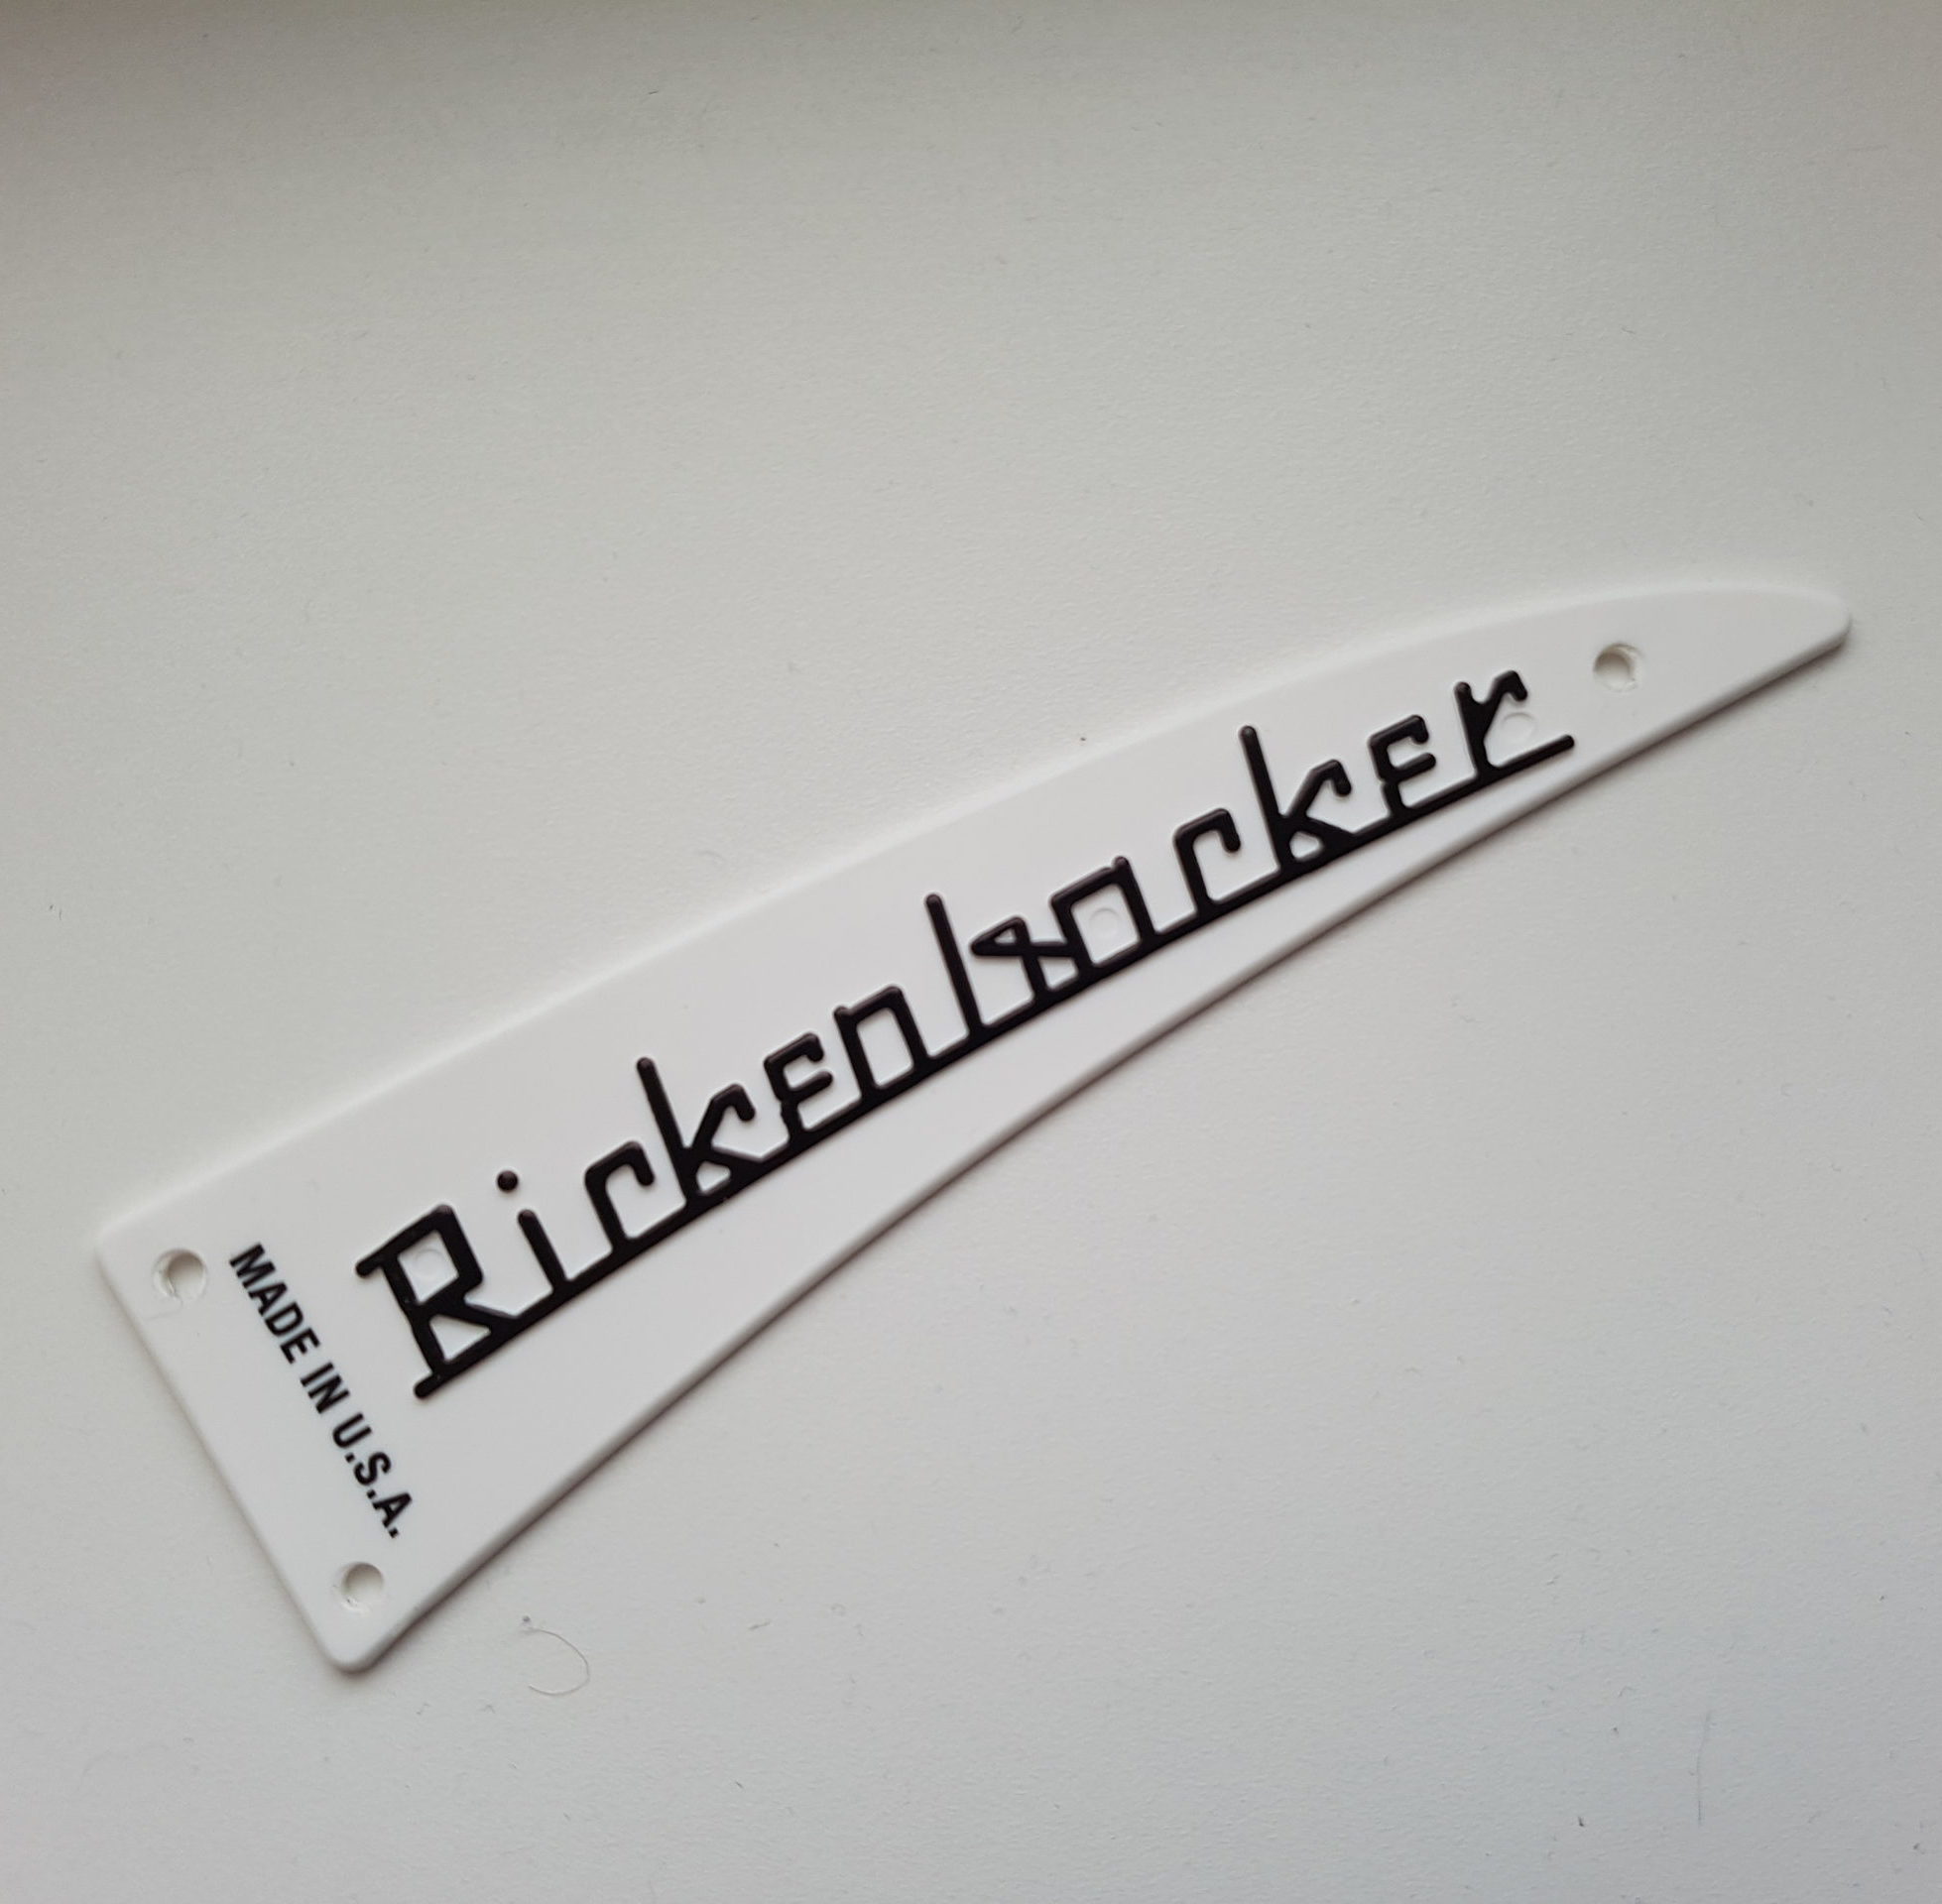 Genuine New Rickenbacker White Truss Rod Cover - Raised letter type -  Standard 6 string Guitar or Bass - For Everything Rickenbacker